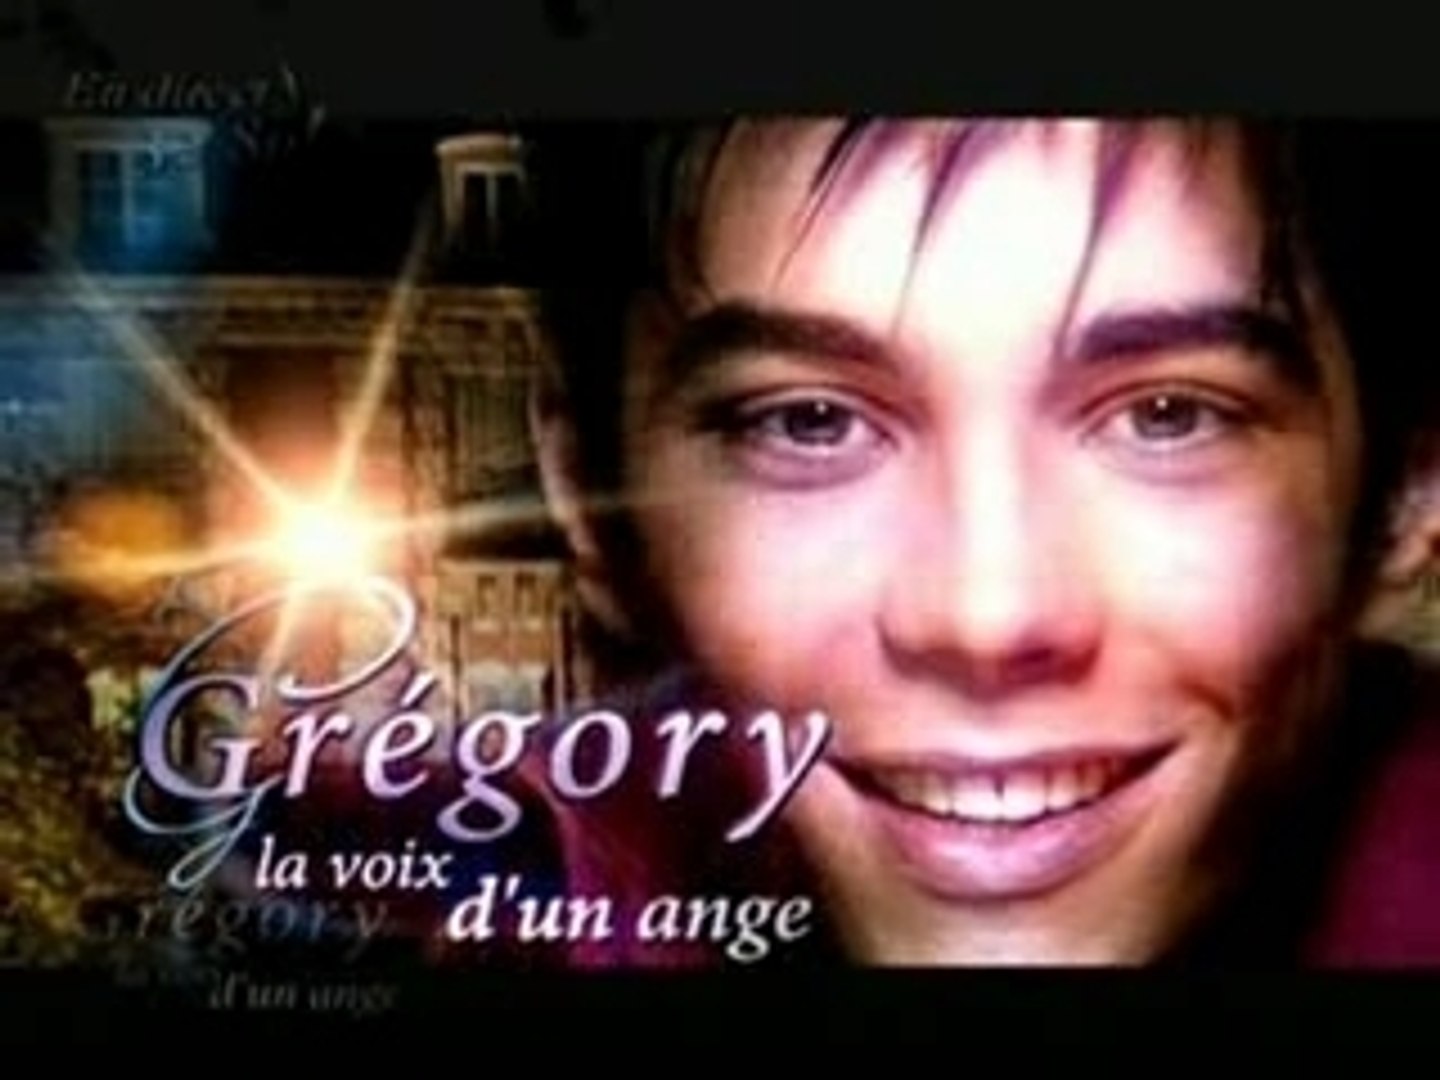 Gregory la voix d'un ange - Vidéo Dailymotion